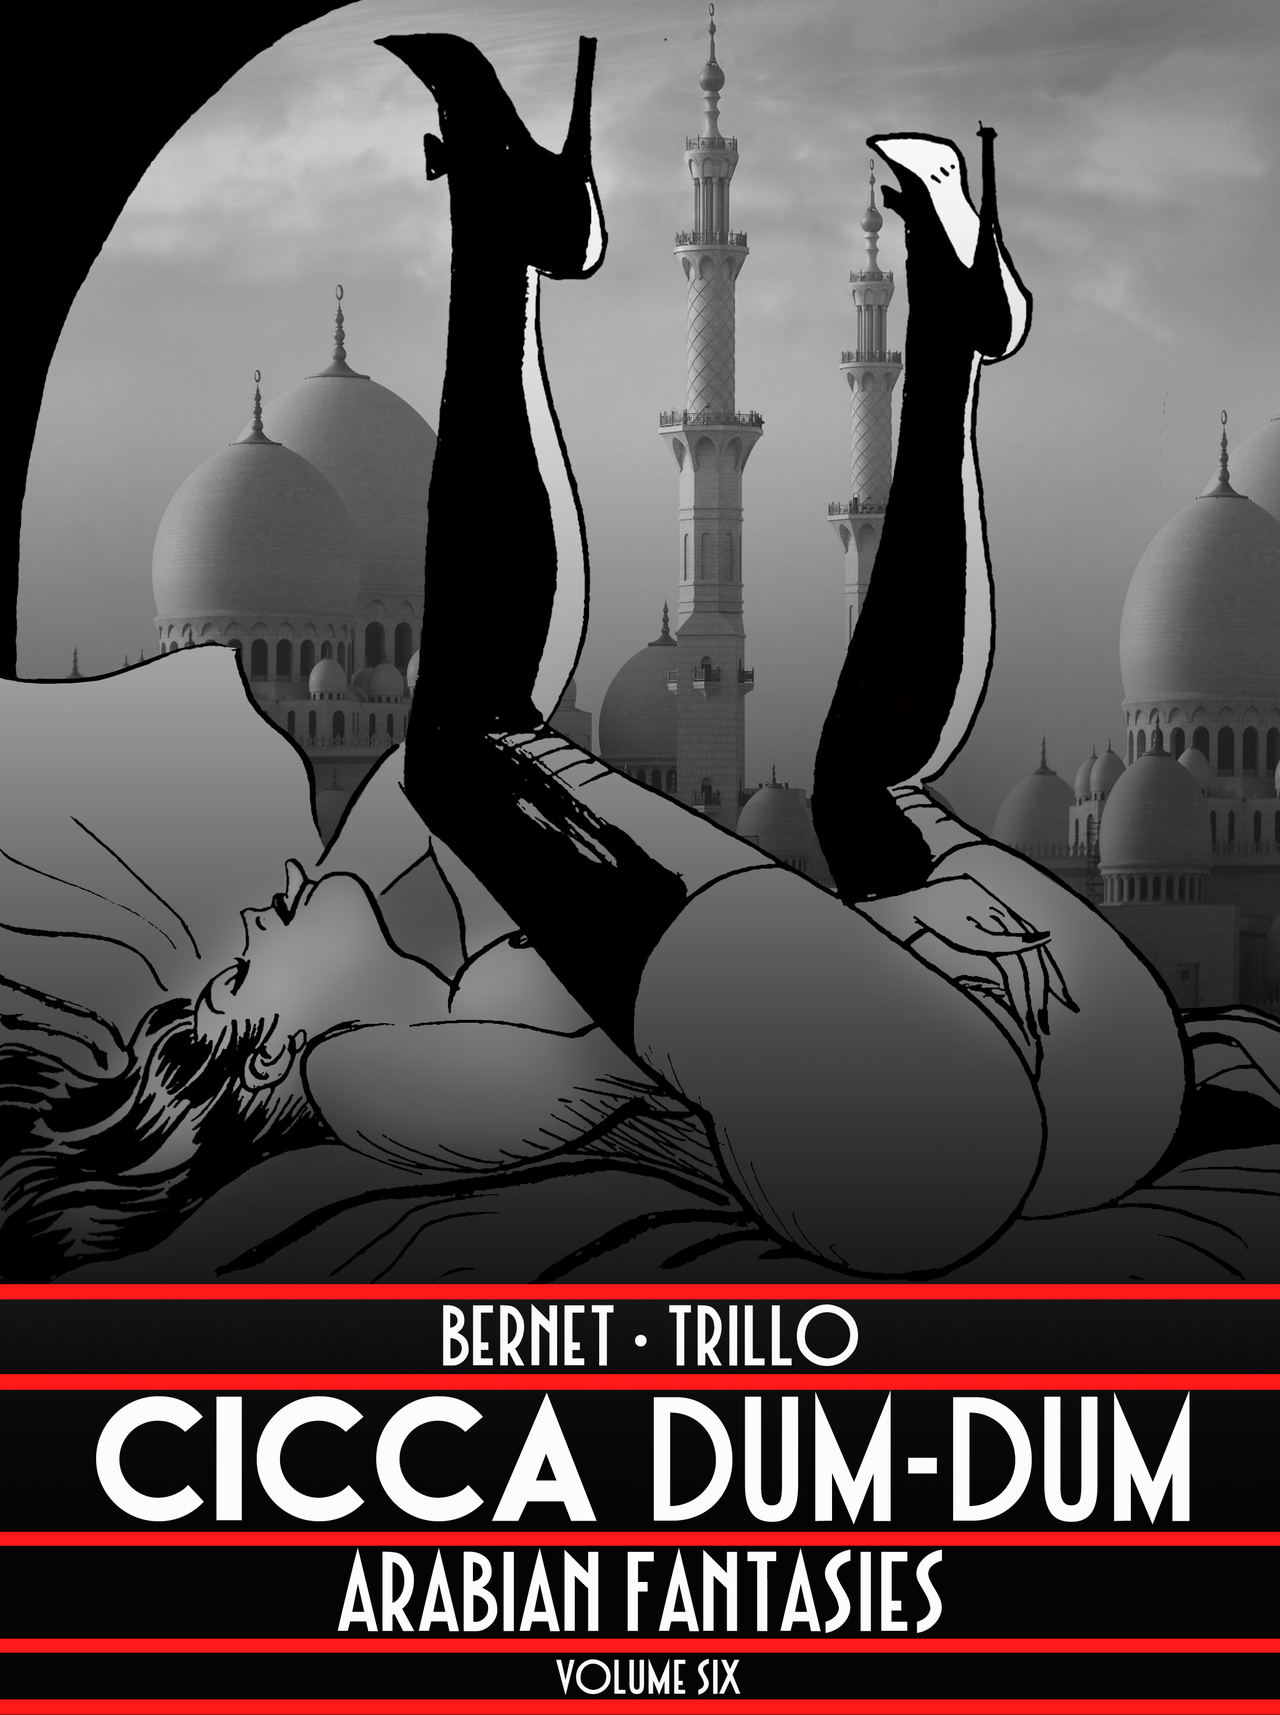 Bernet Trillo - Cicca Dum-Dum (Arabian Fantasies)